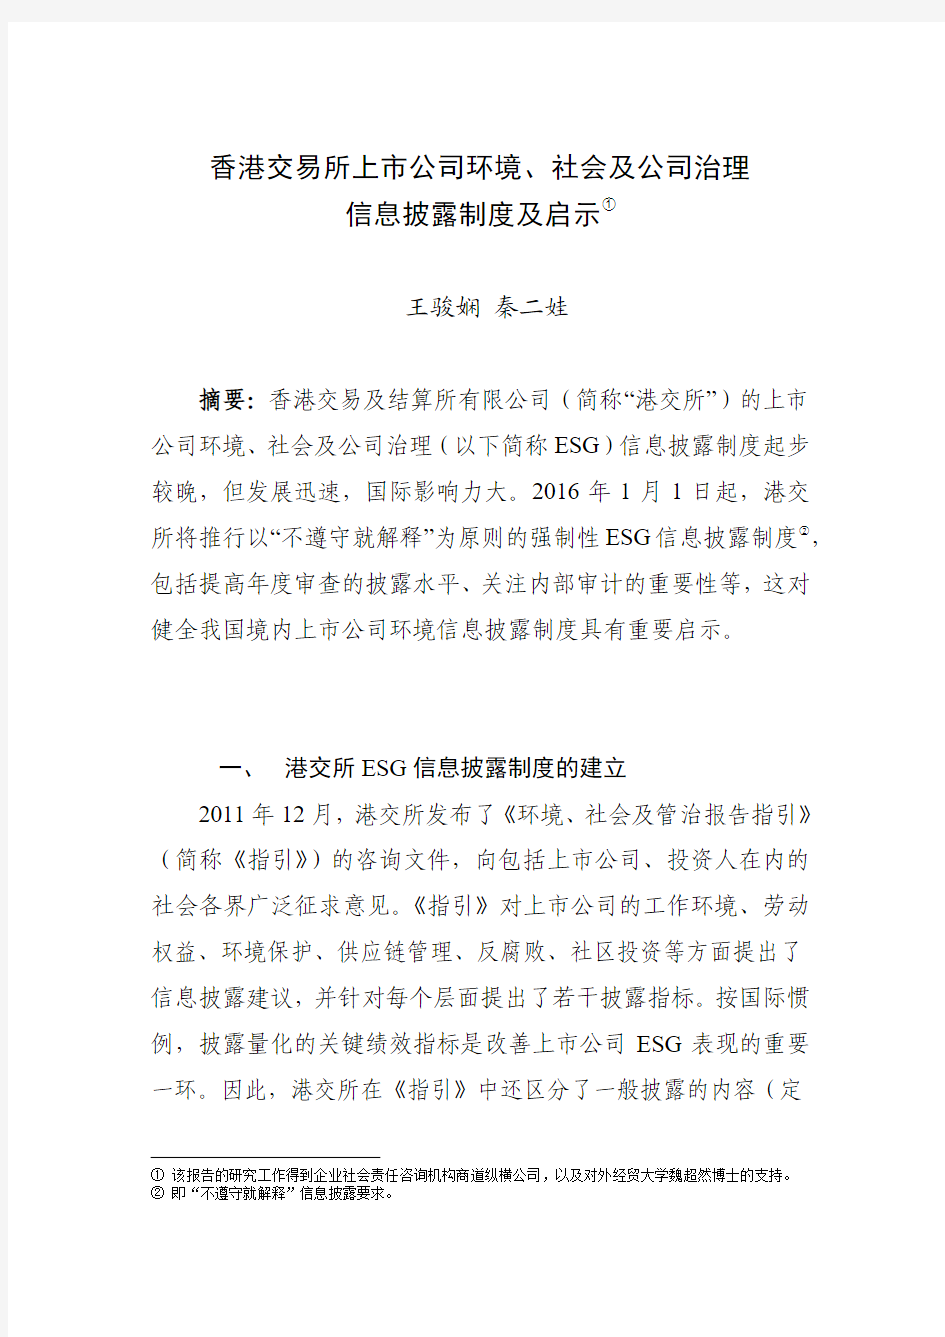 中国证券监督管理委员会-香港交易所上市公司环境、社会及公司治理信息披露制度及启示